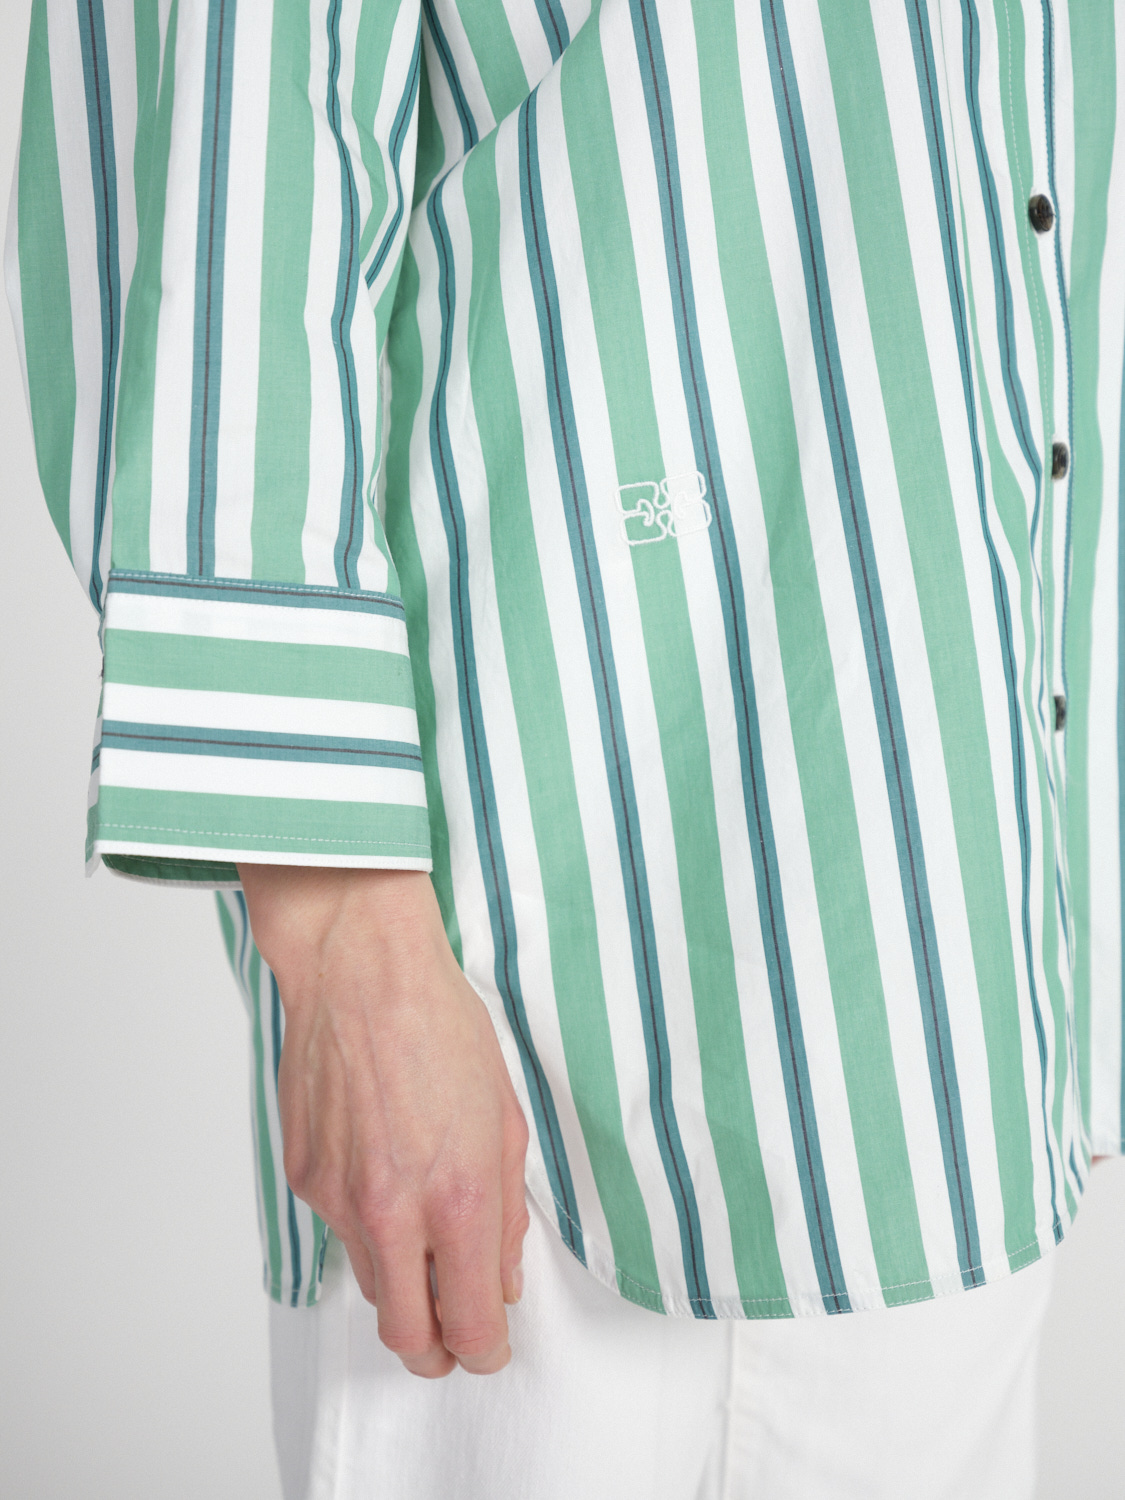 Ganni Camicia oversize in cotone con disegno a righe   verde 38